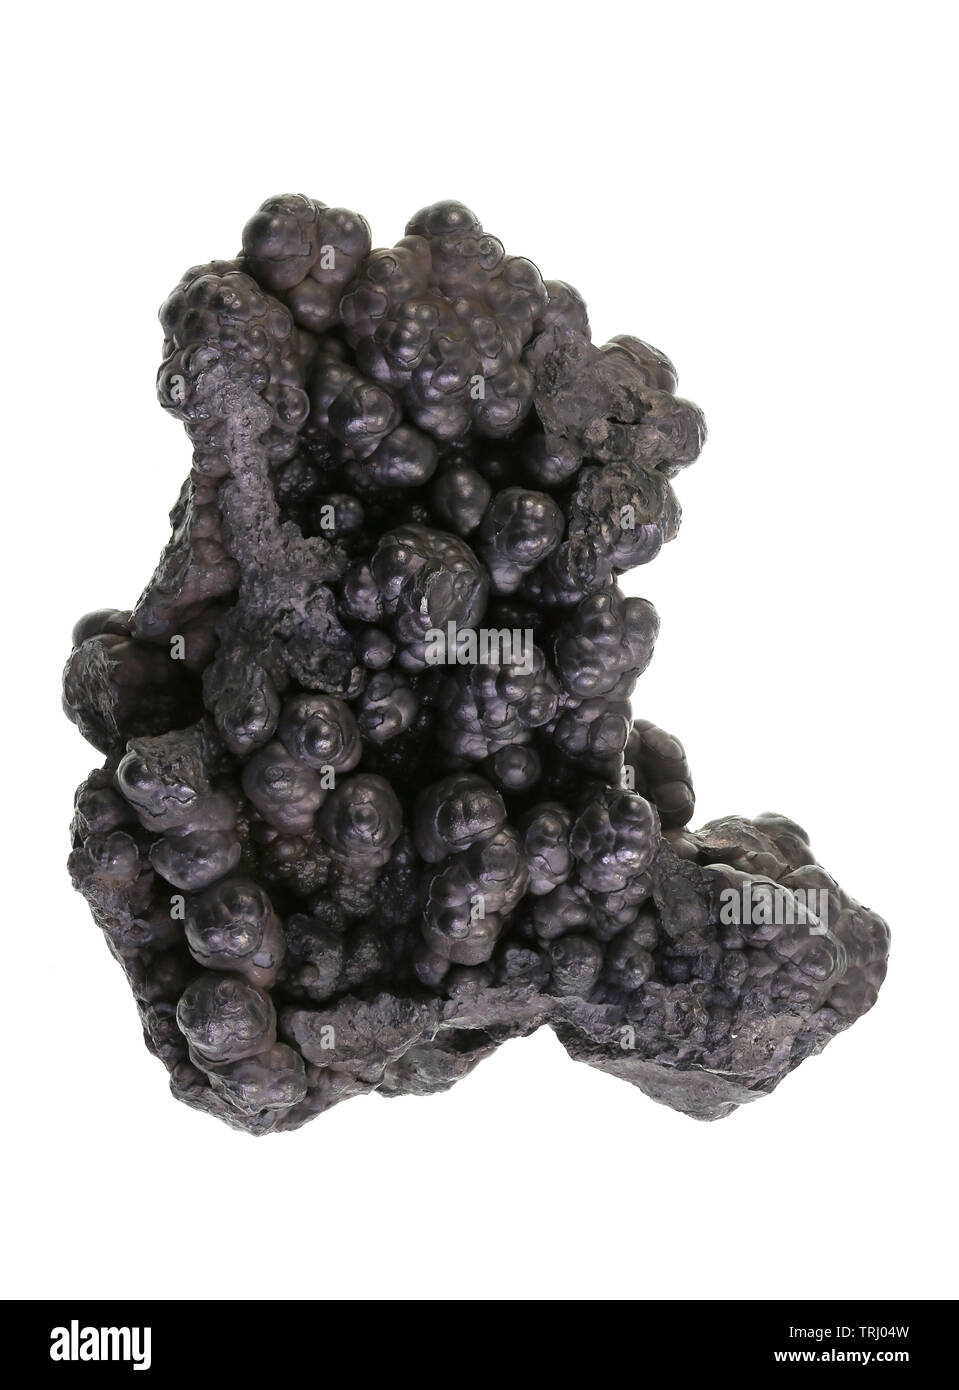 Focus stacked image of a manganese nodules specimen from Kasekelesa deposit, Luabala, DR Congo Stock Photo